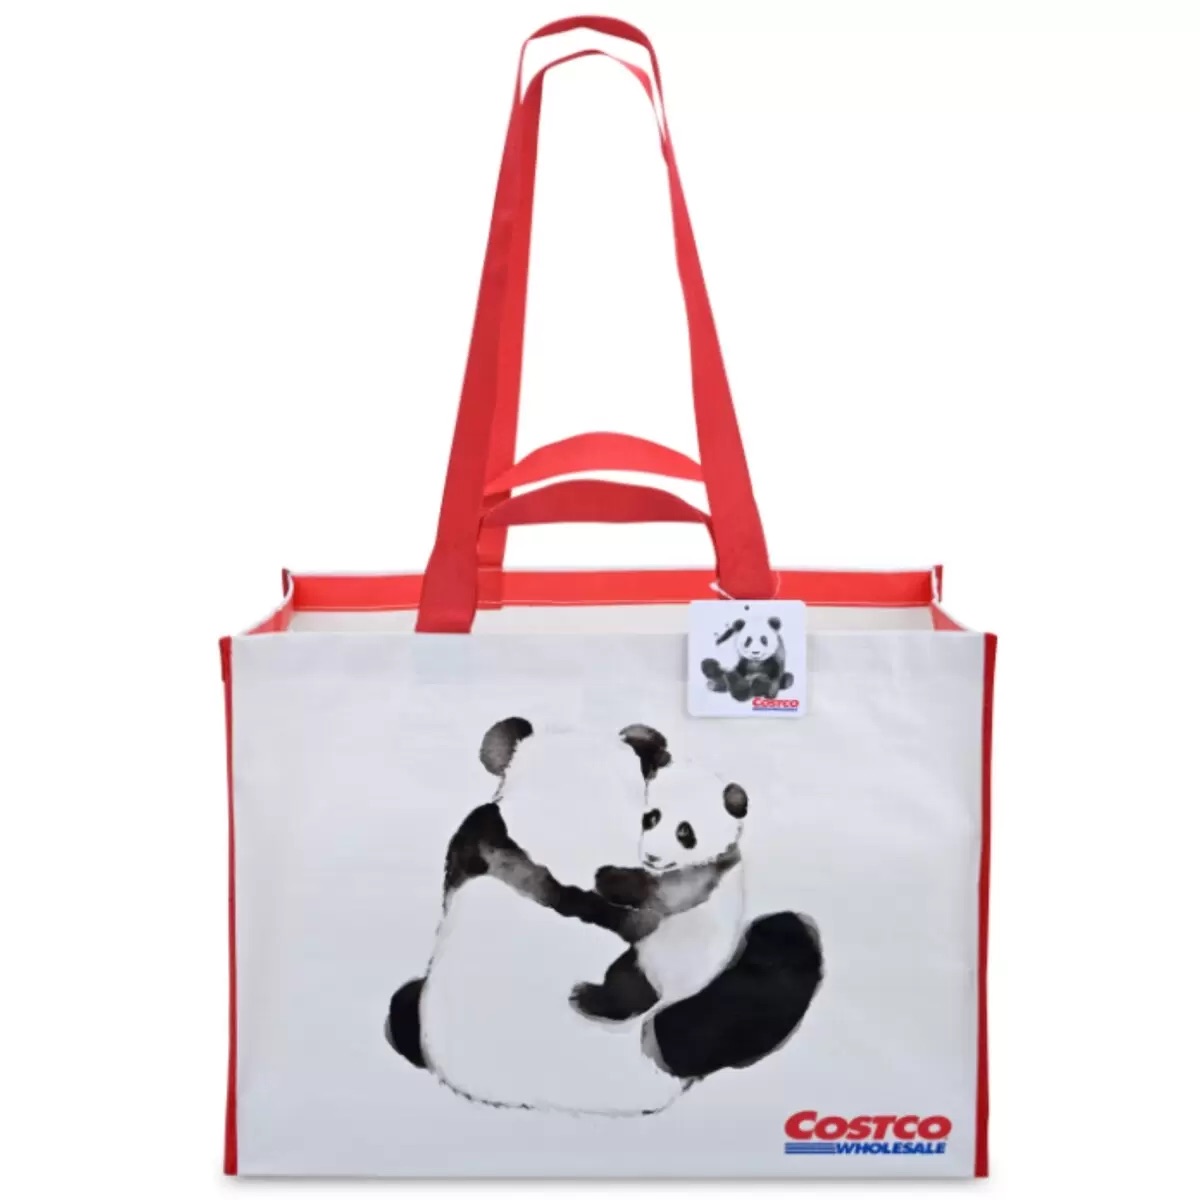 コストコ 台湾 ショッピングバッグ パンダ 2枚パック Costco Taiwan Shopping Bag Panda 2 Packs